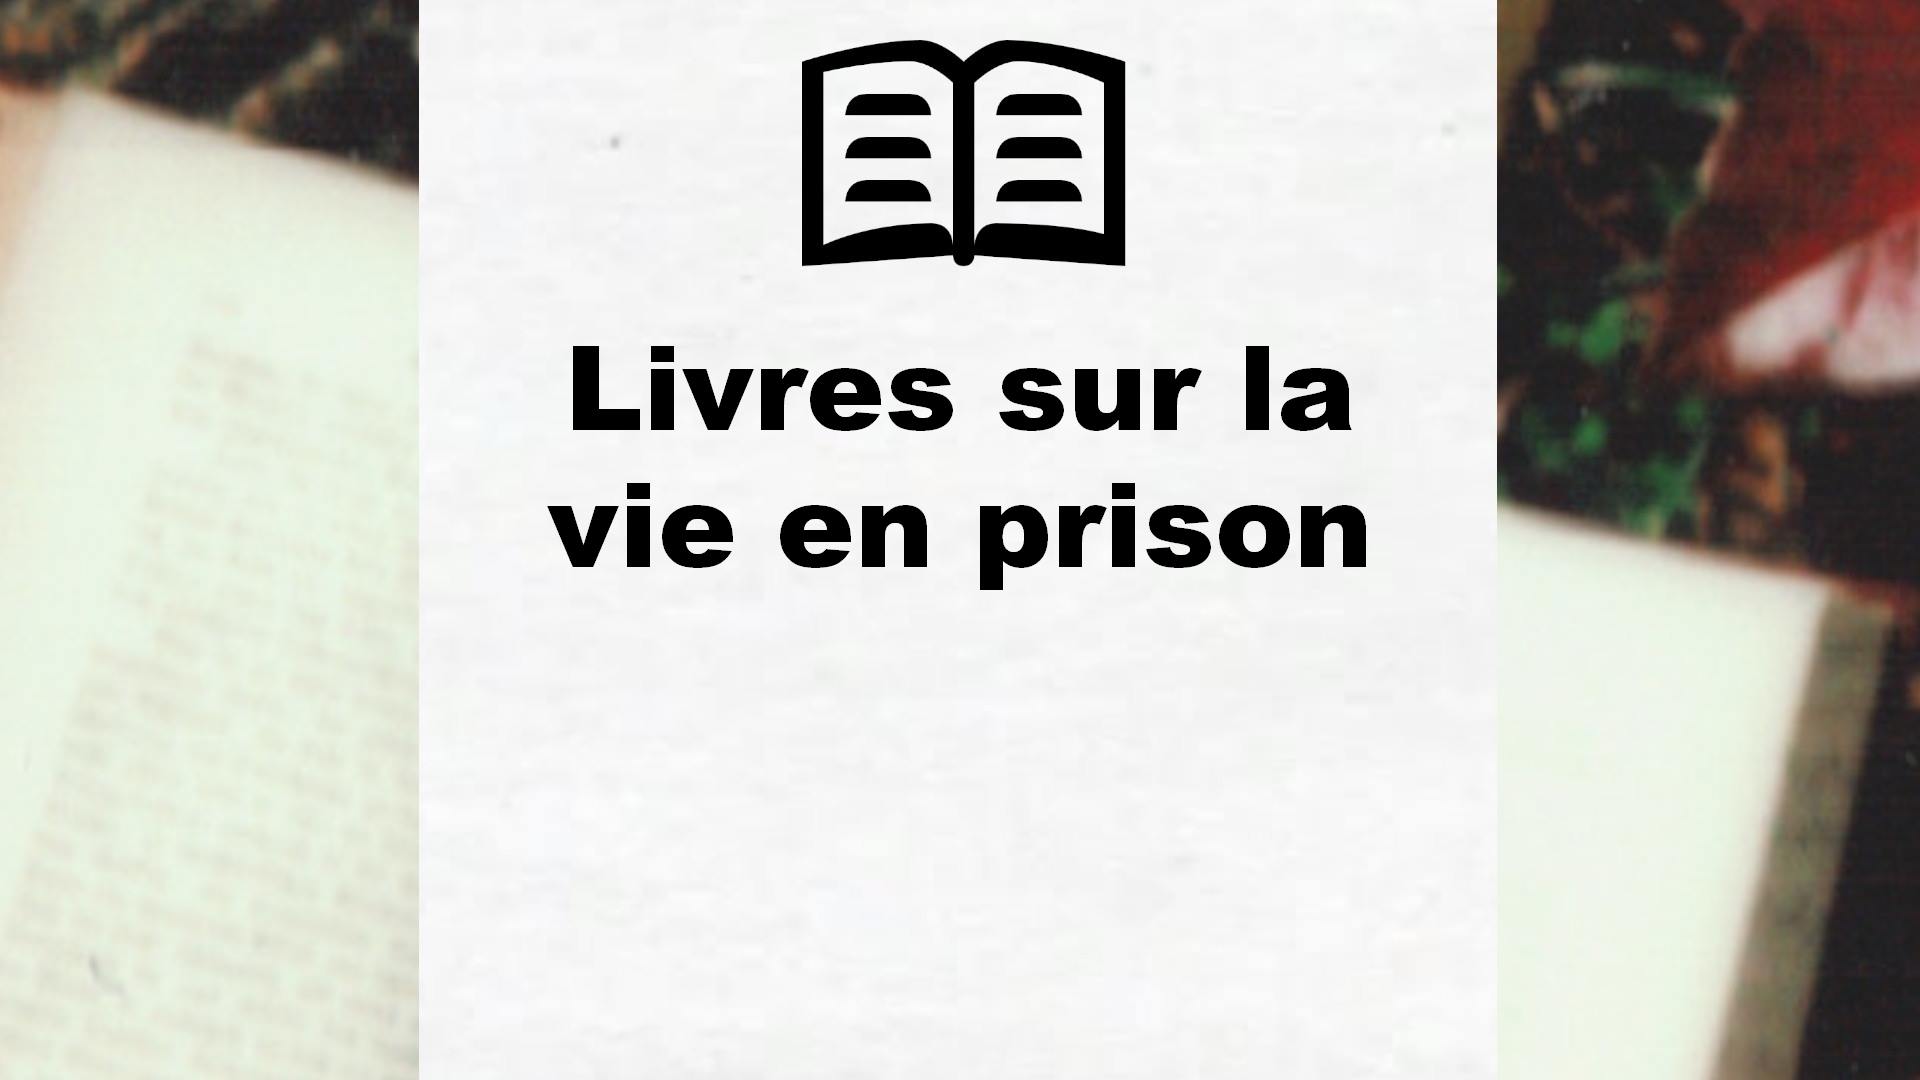 Livres sur la vie en prison